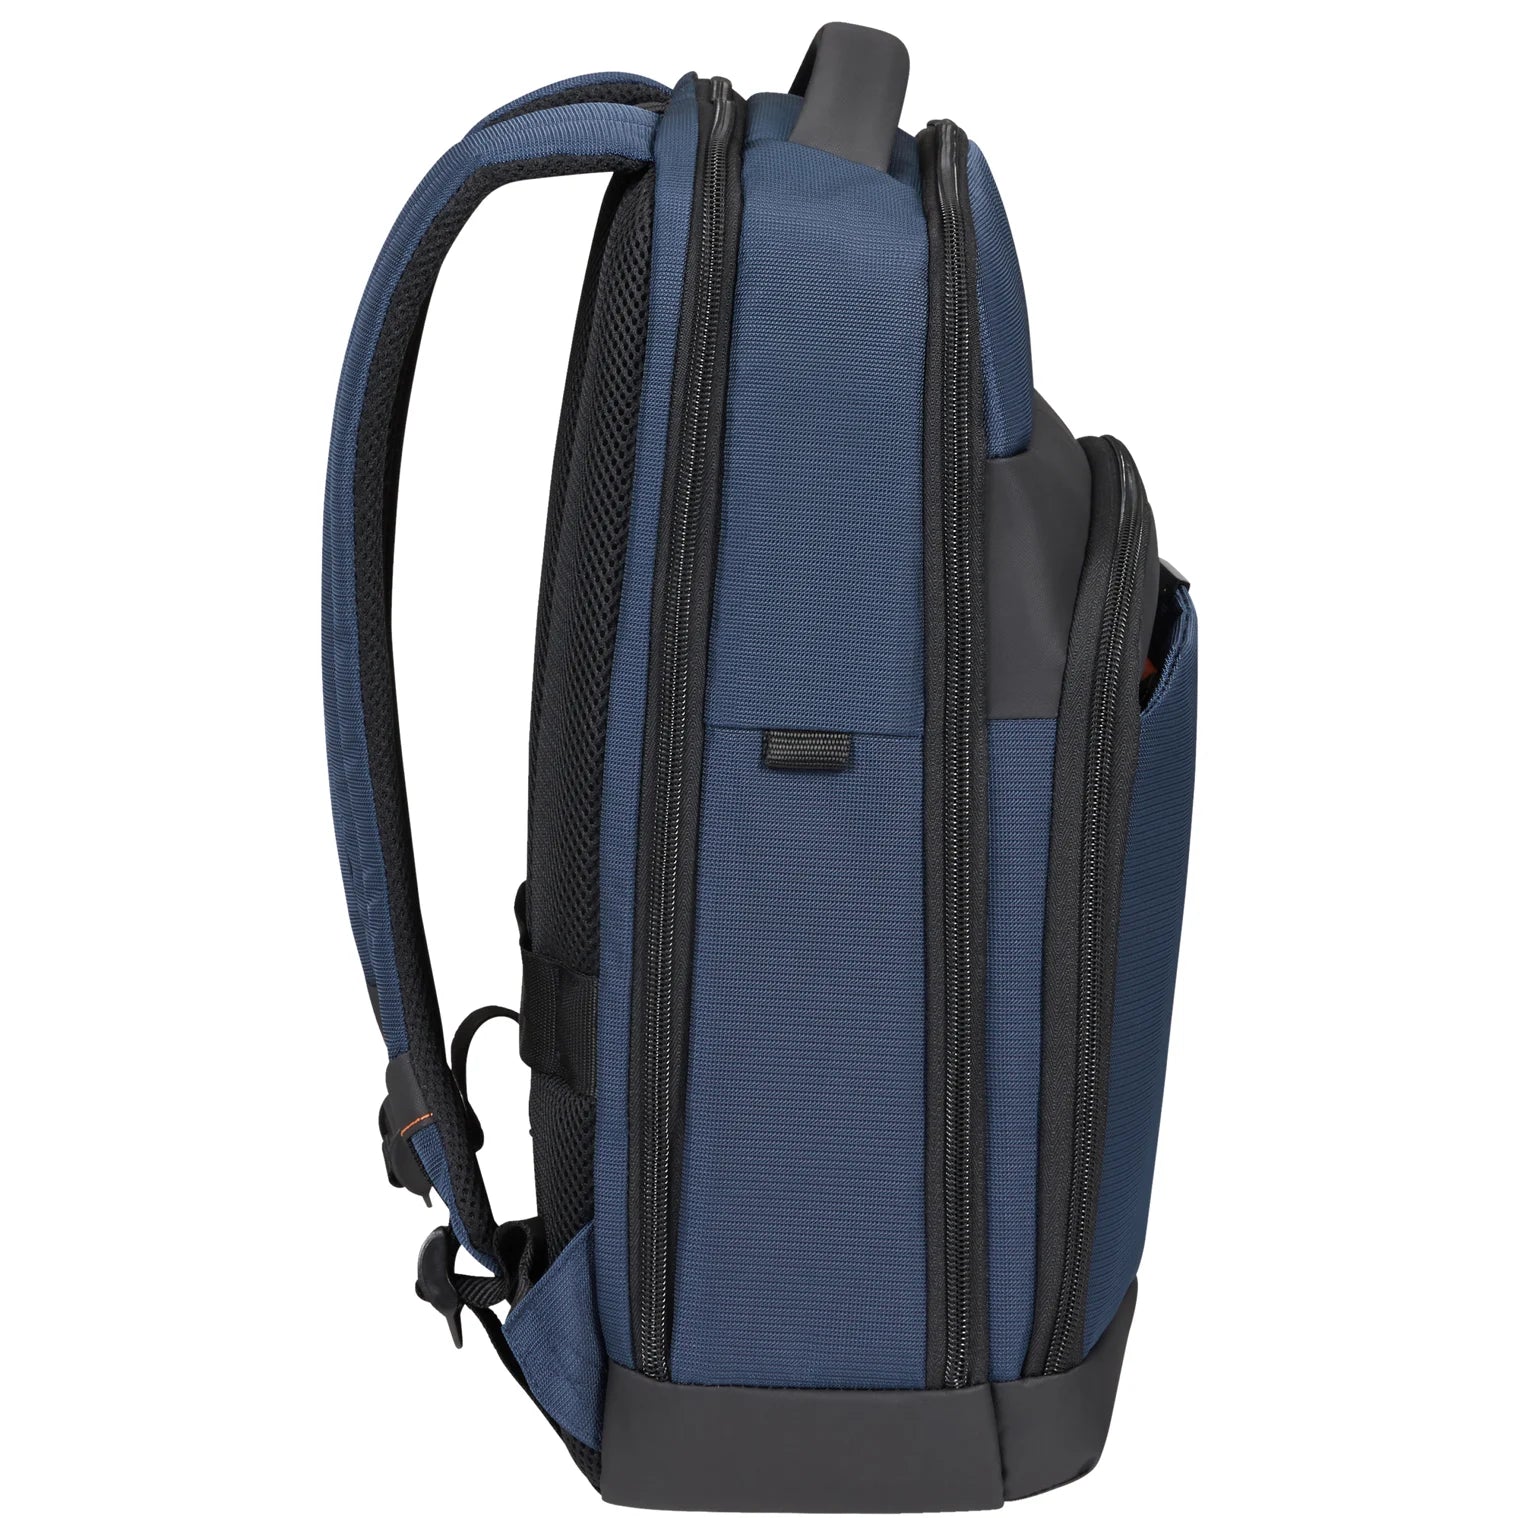 Samsonite Mysight Laptop Backpack 43 cm - Black